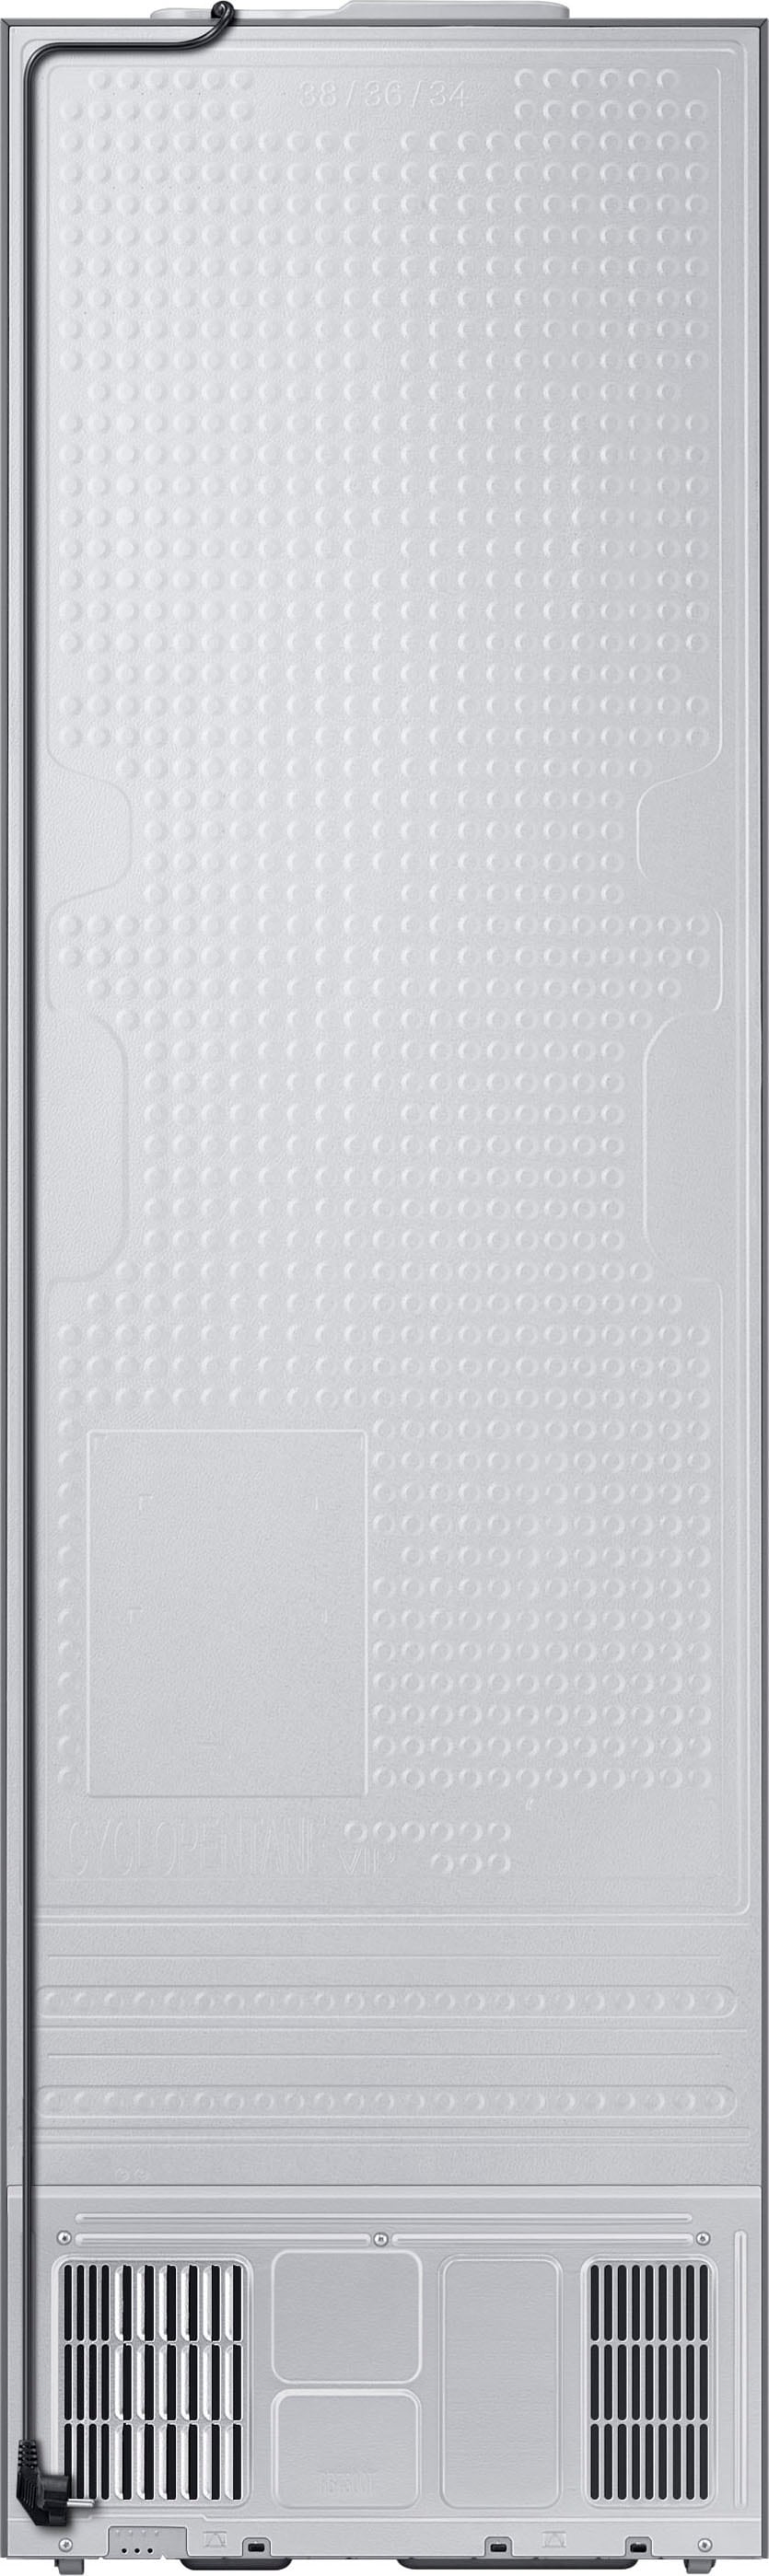 Samsung Kühl-/Gefrierkombination »RL38T607BB1«, RL38T607BB1, 203 cm hoch, 59,5 cm breit